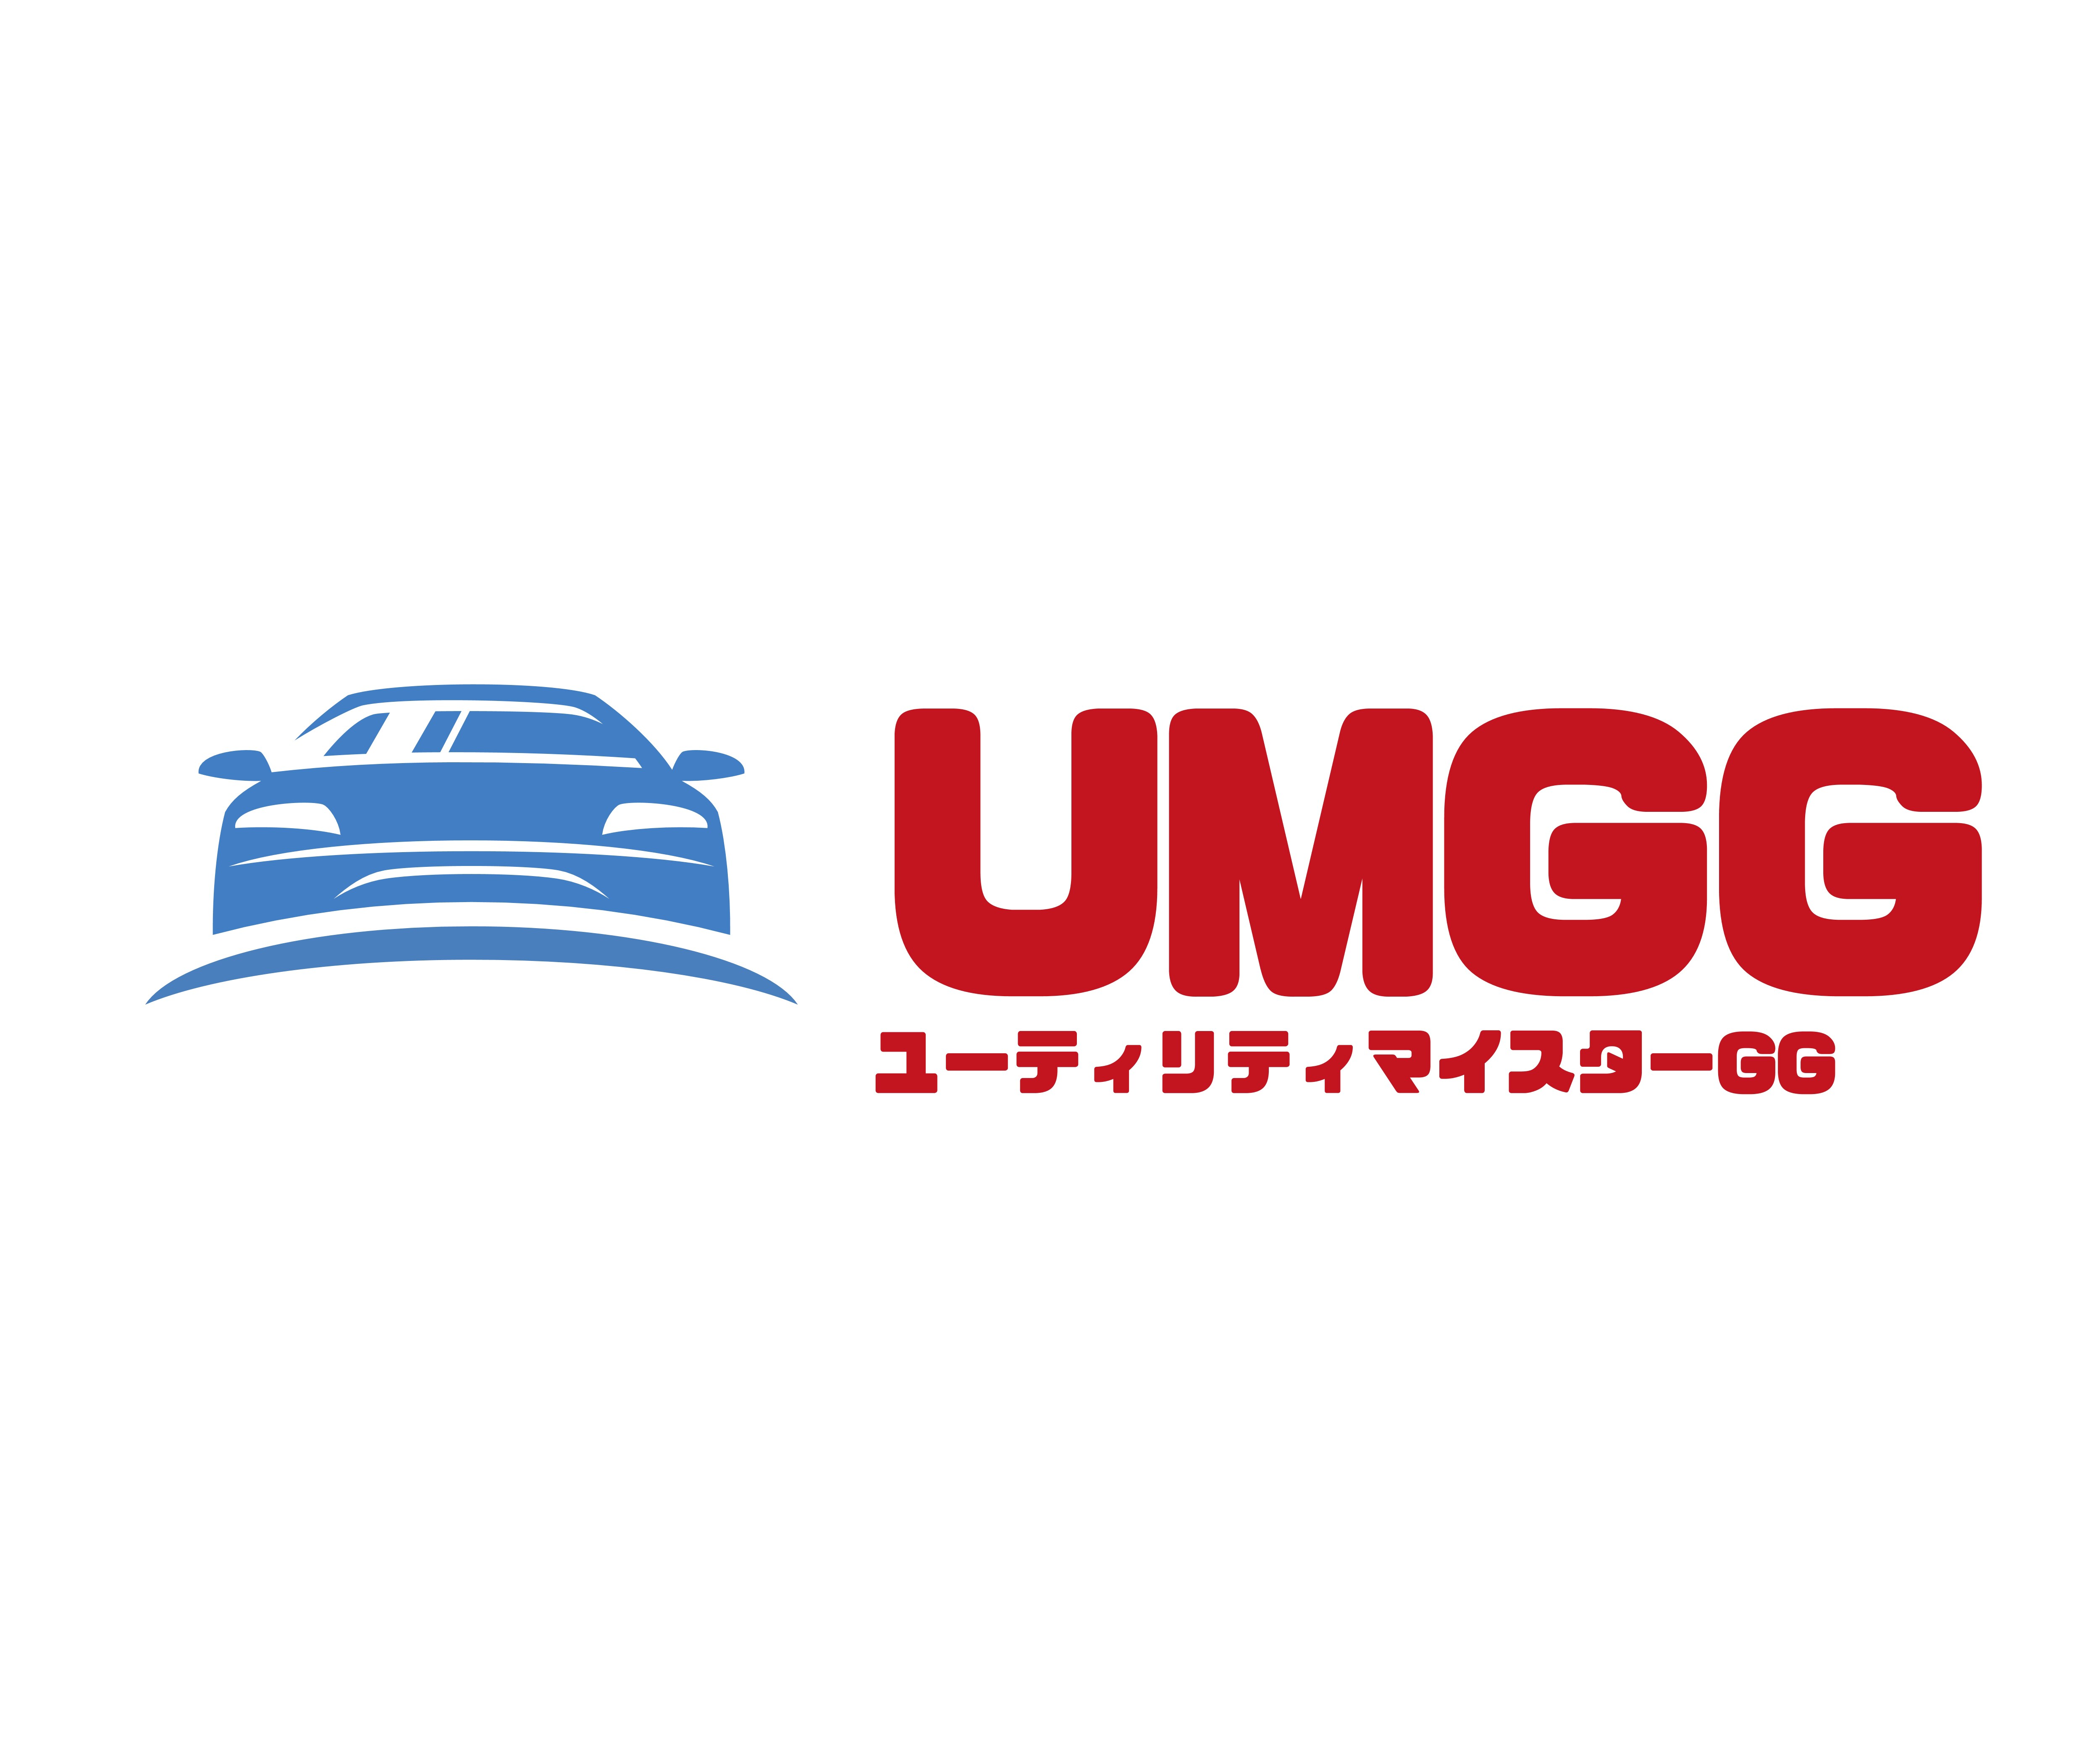 UMGG(ユーティリティマイスターGG)